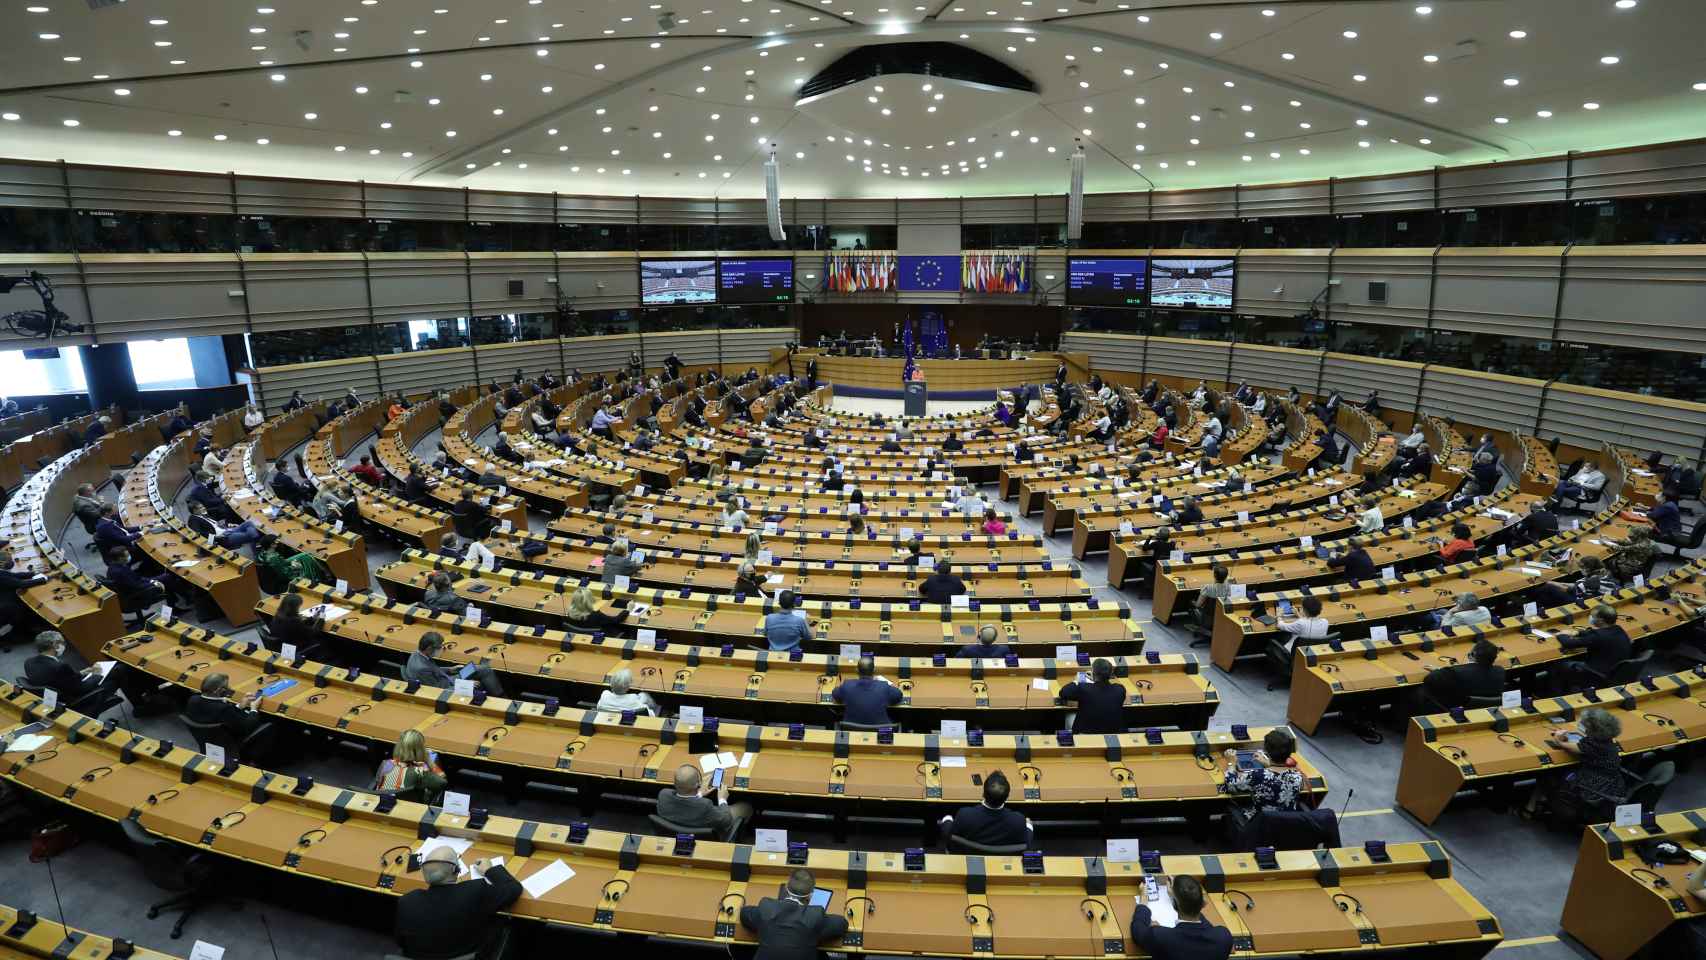 Vista general del Parlamento europeo durante una sesión plenaria en una imagen de hace unos días.